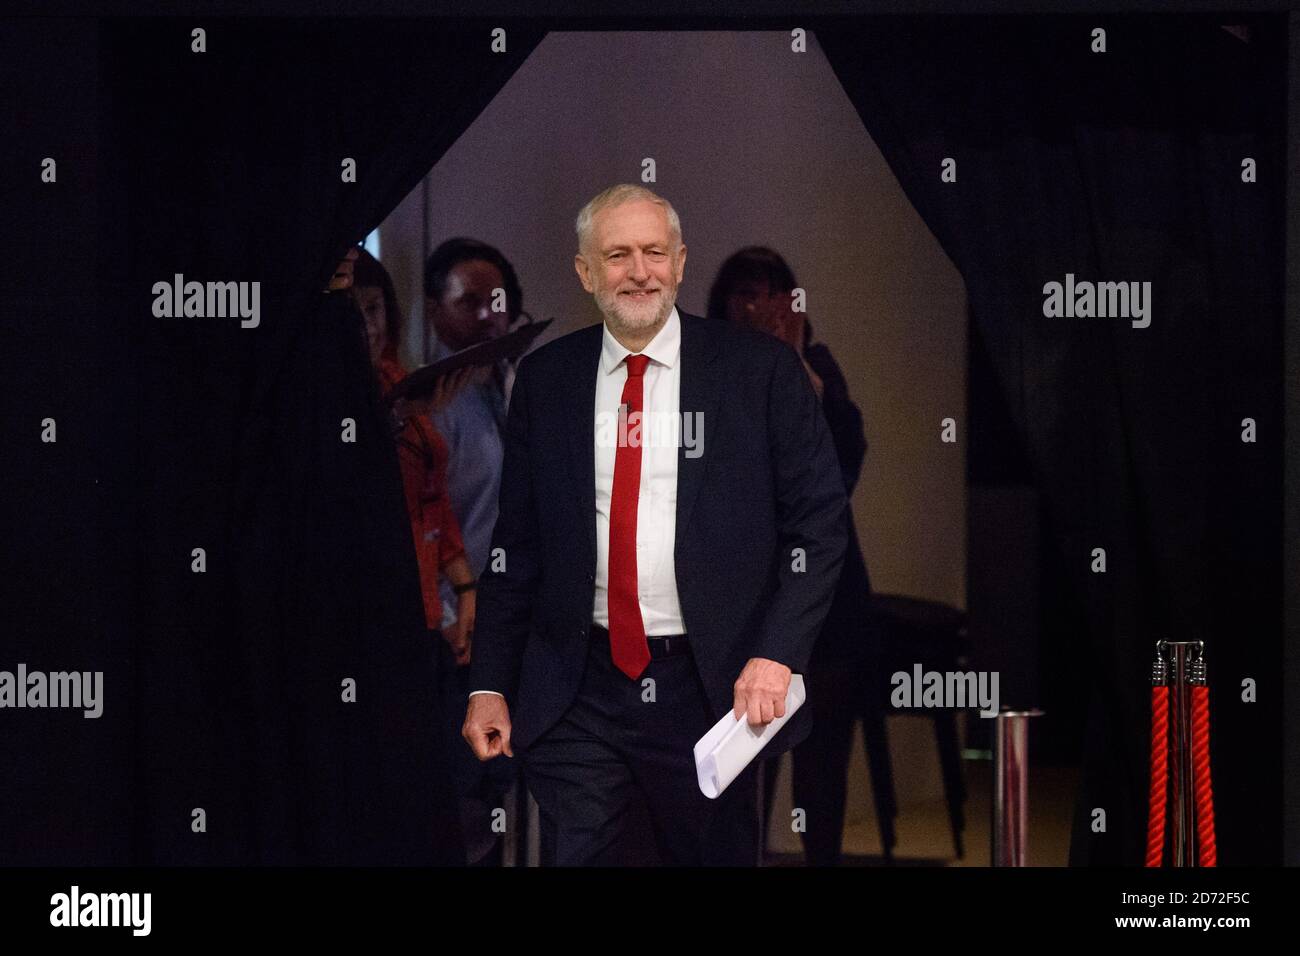 Jeremy Corbyn ha raffigurato prima di dare il suo discorso del leader, durante la conferenza del Partito laburista a Brighton. Data immagine: Mercoledì 27 settembre 2017. Il credito fotografico dovrebbe essere: Matt Crossick/ EMPICS Entertainment. Foto Stock